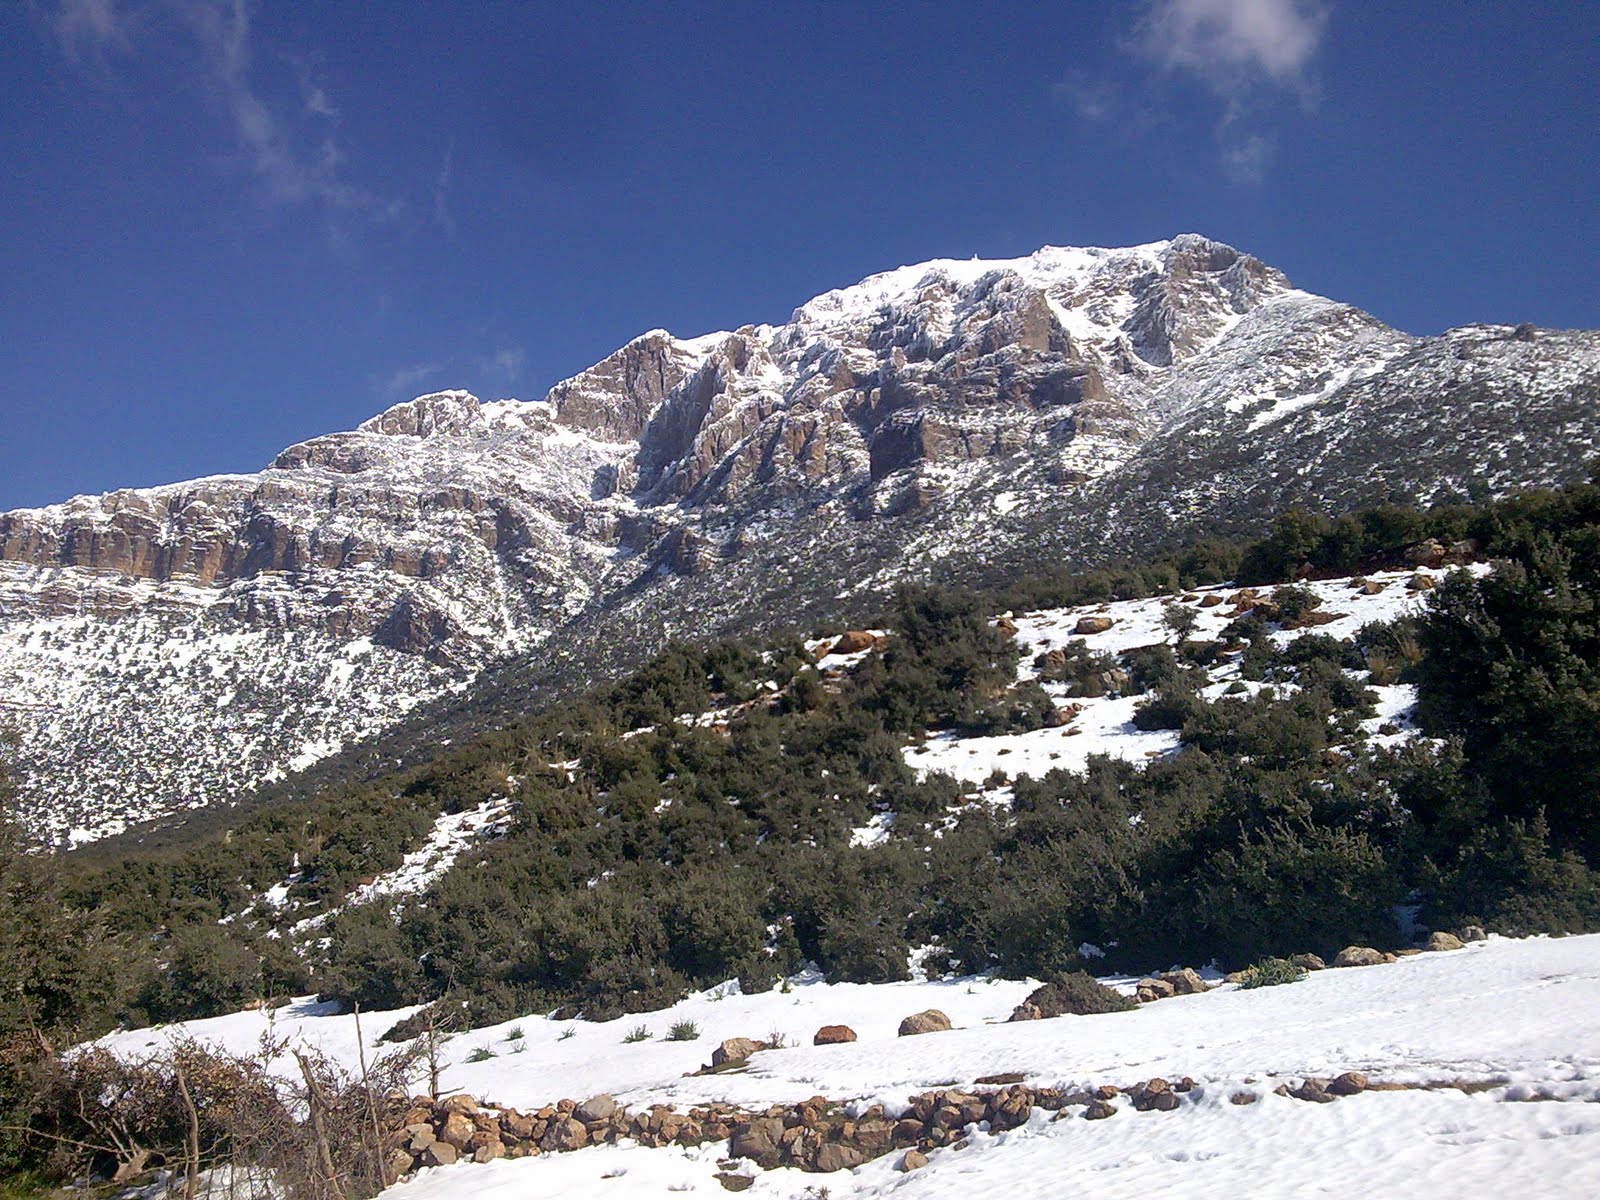  صور رائعة لجبال الونشريس لا تفوتوها  Image017